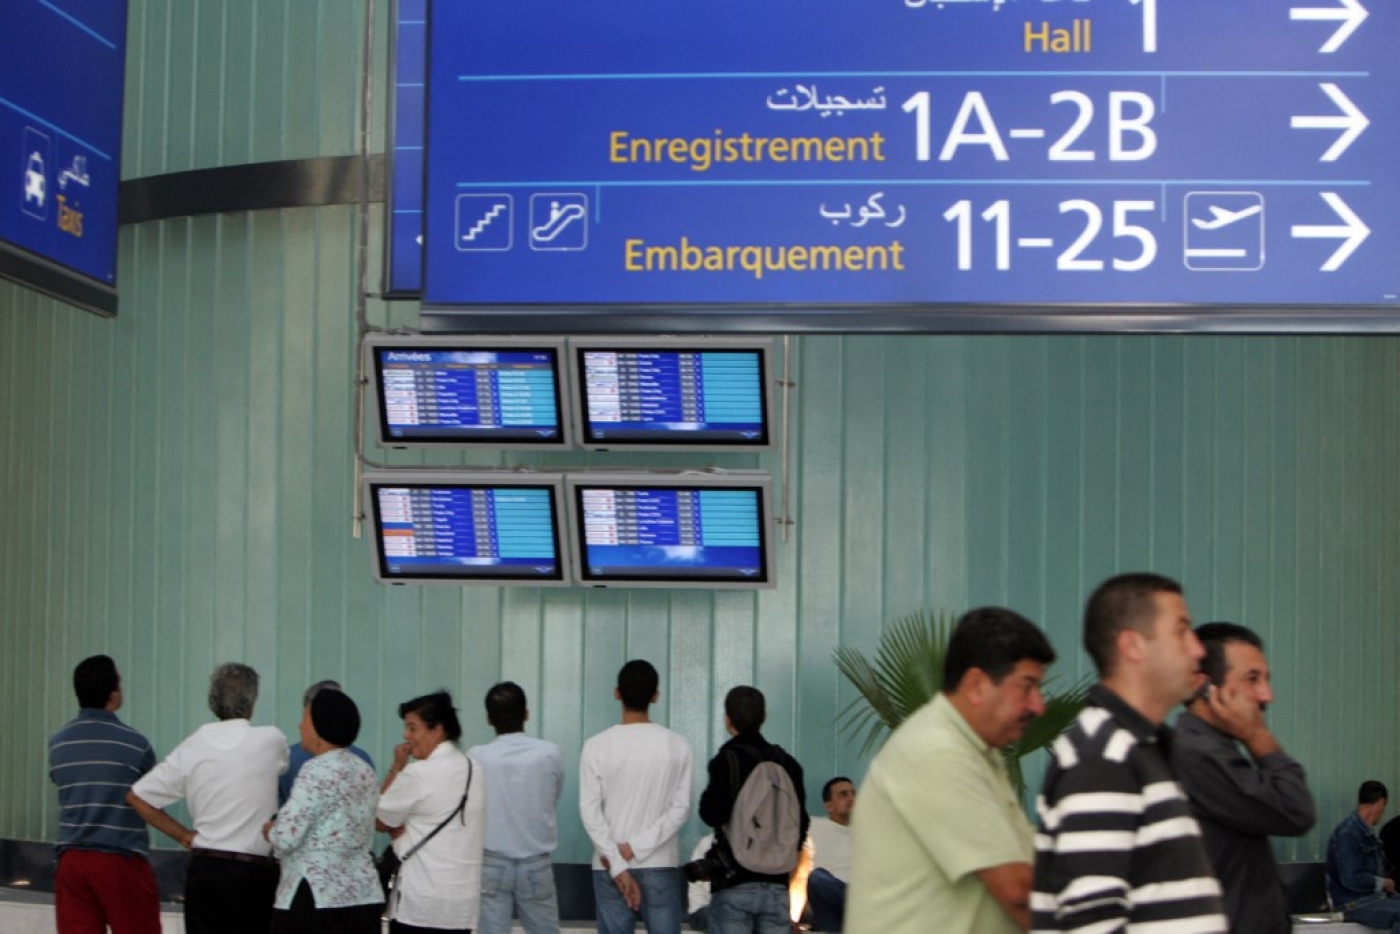 La difficulté d’obtenir un rendez-vous pour déposer sa demande de visa a créé un trafic important (AFP/Fayez Nureldine)